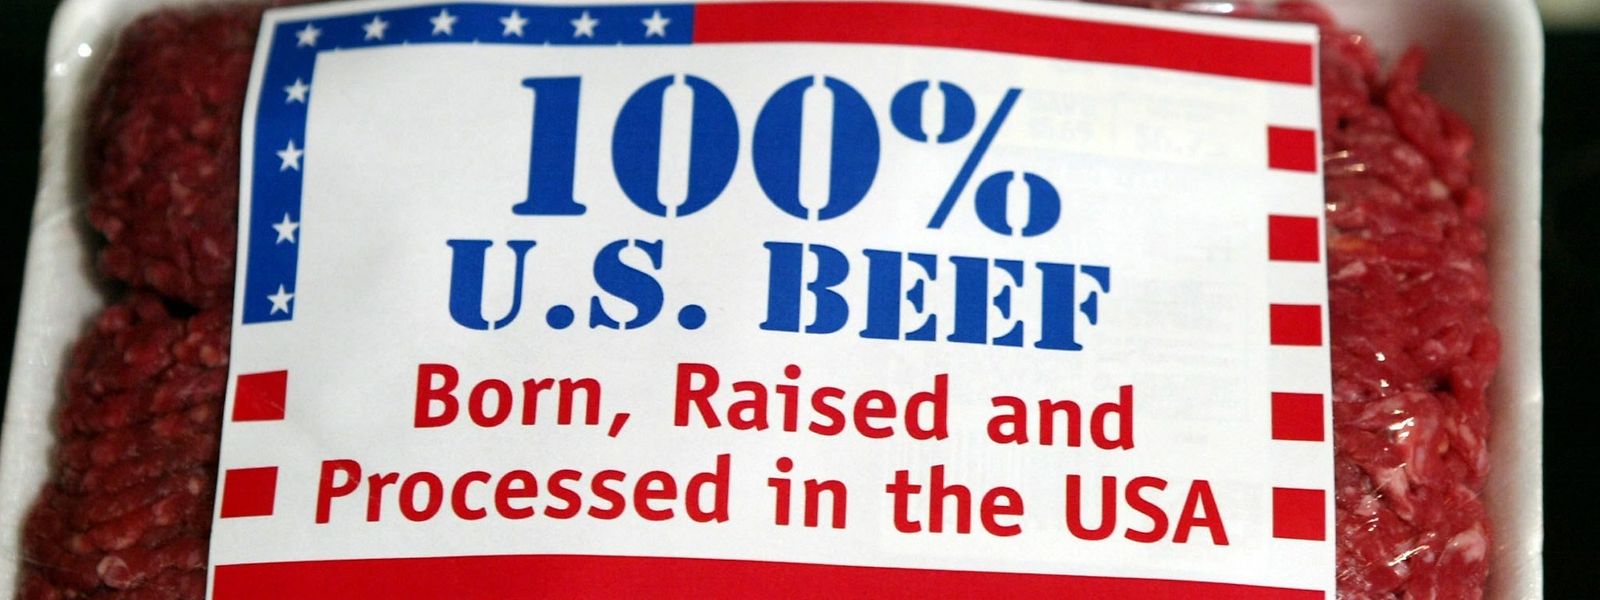 Die USA und die EU haben sich auf den Anstieg amerikanischer Rindfleischexporte geeinigt.